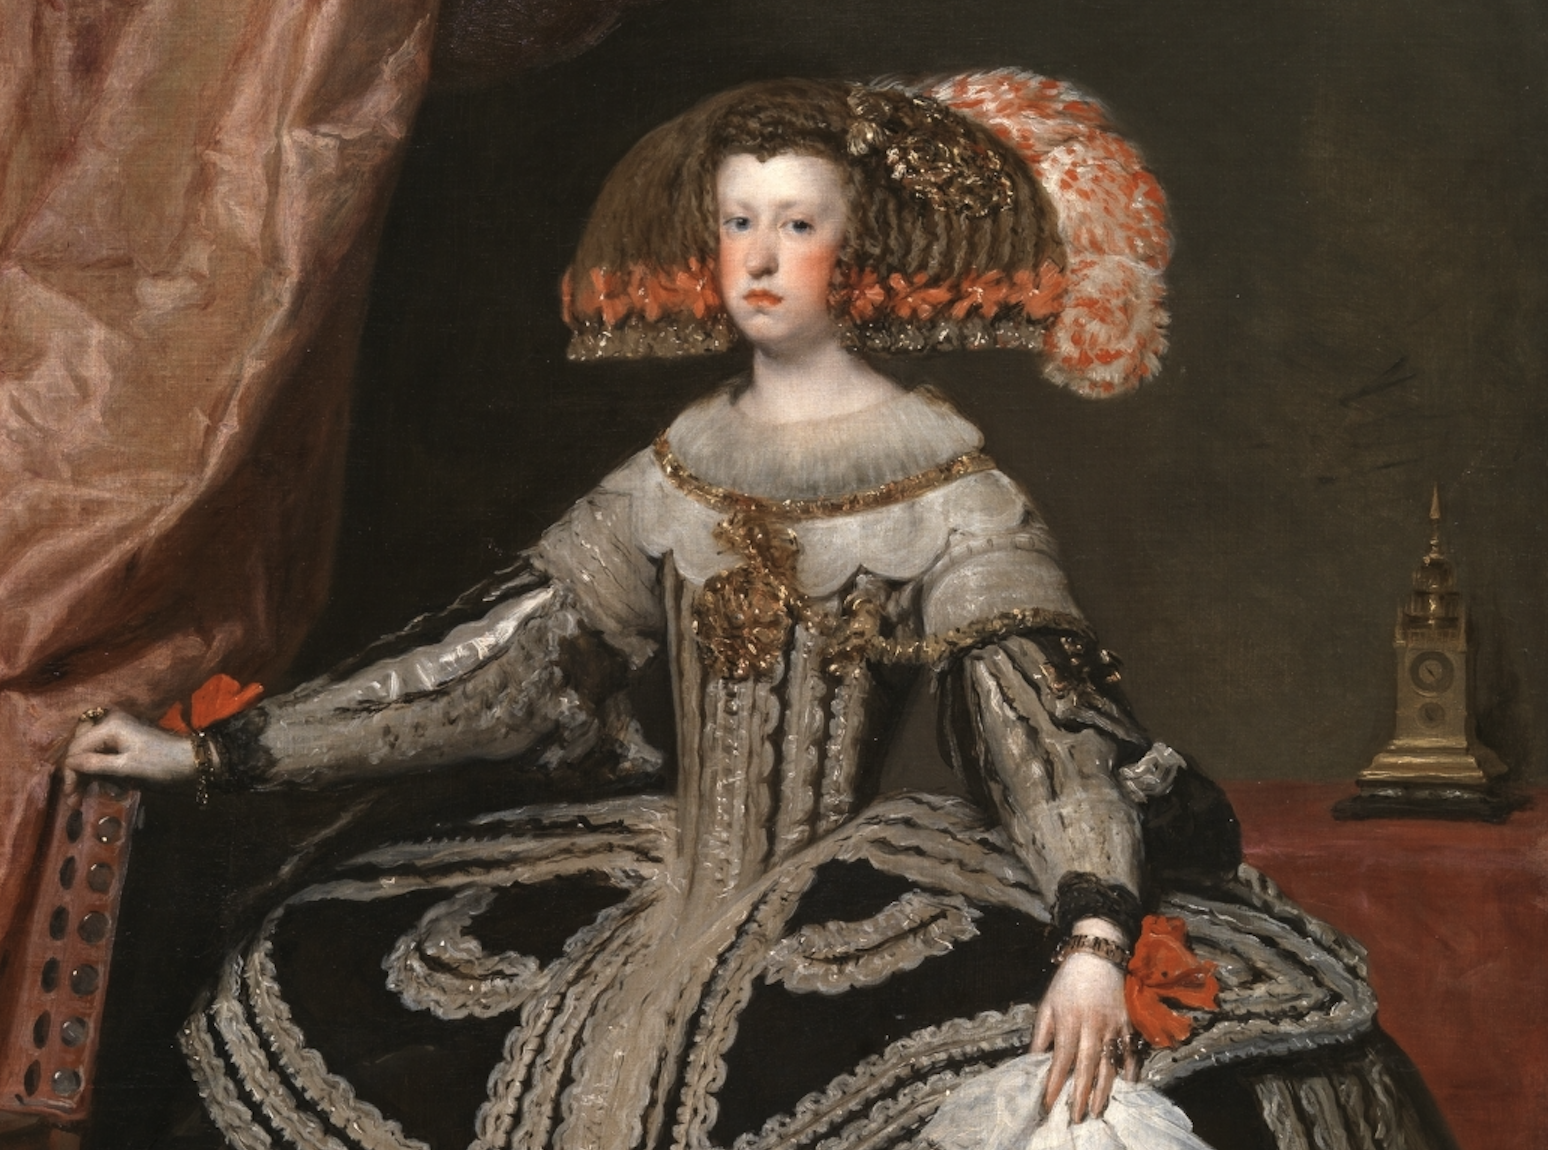 All’Accademia Carrara, in mostra il “Ritratto della regina Maria Anna d’Austria” del Velázquez